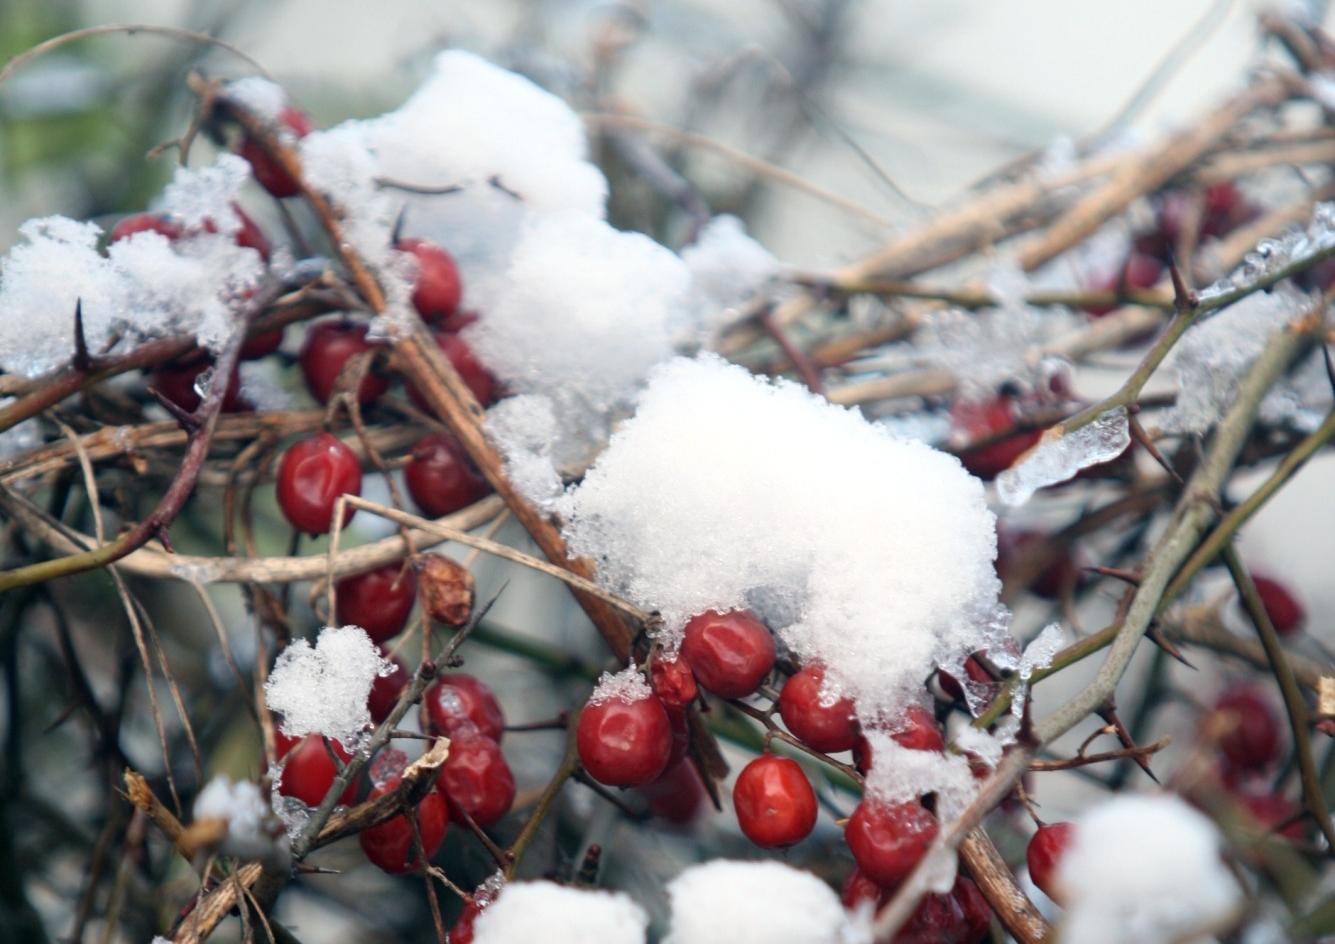 Seasonal berries. Photo by Steve Cobb